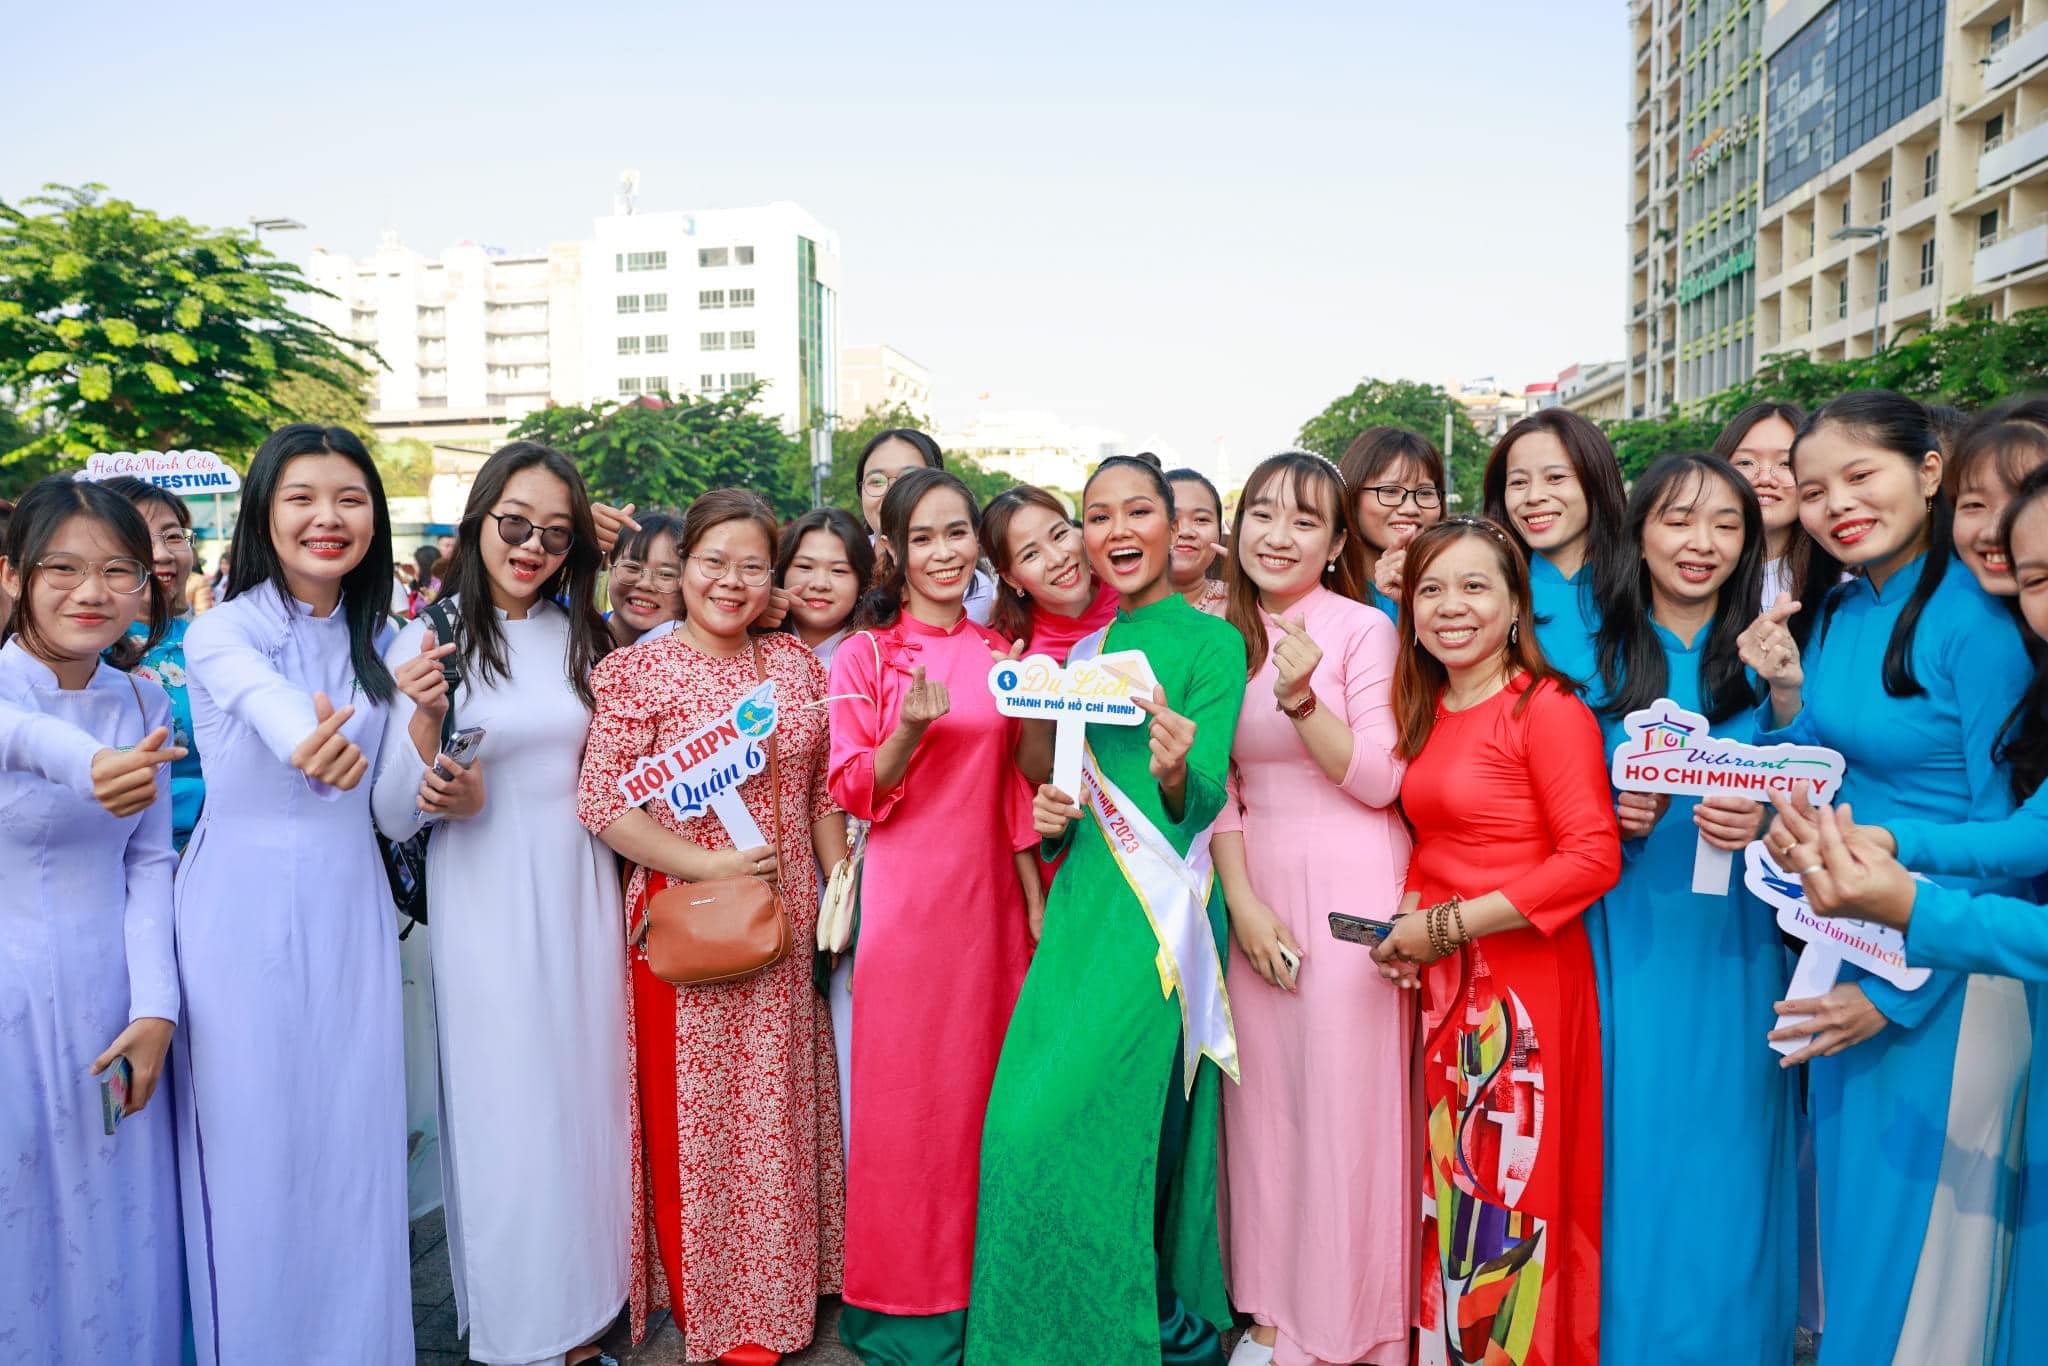 TP.HCM tổ chức lễ diễu hành áo dài thu hút hơn 3000 người tham gia. (Nguồn ảnh: Lấy từ trang Facebook Du lịch thành phố Hồ Chí Minh)